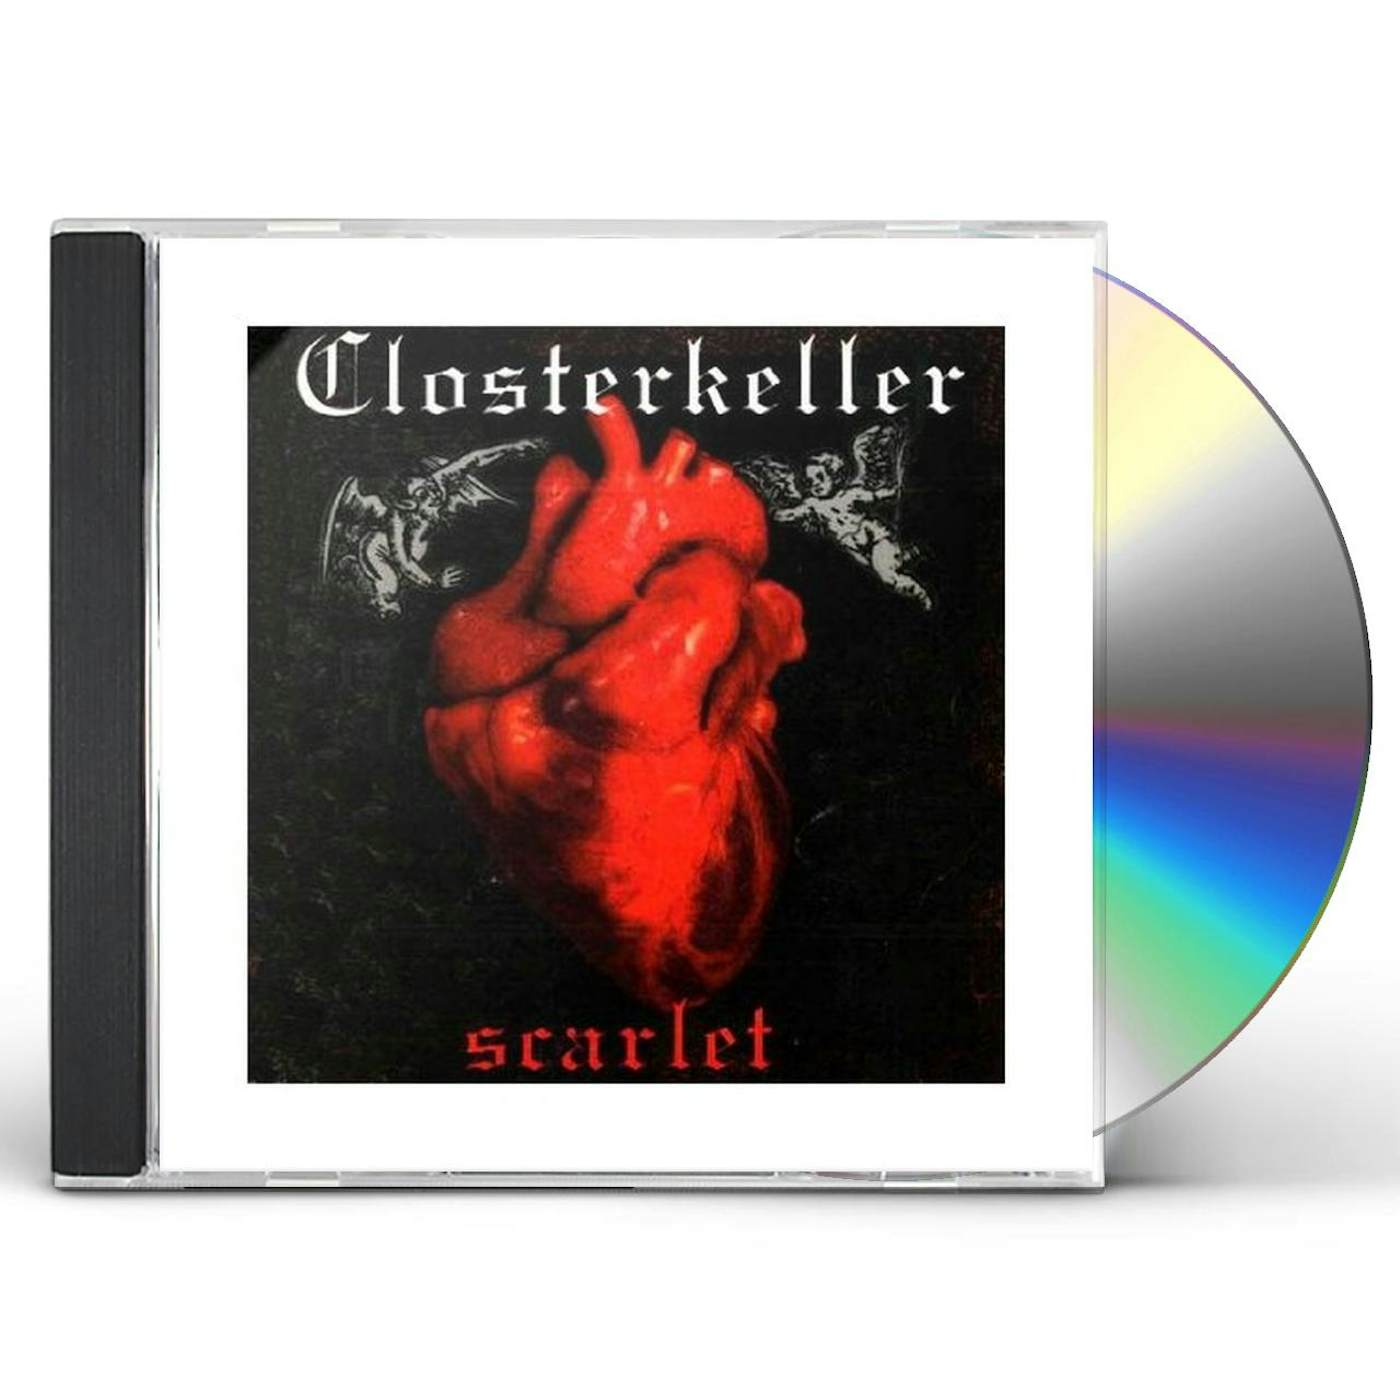 Closterkeller SCARLET CD